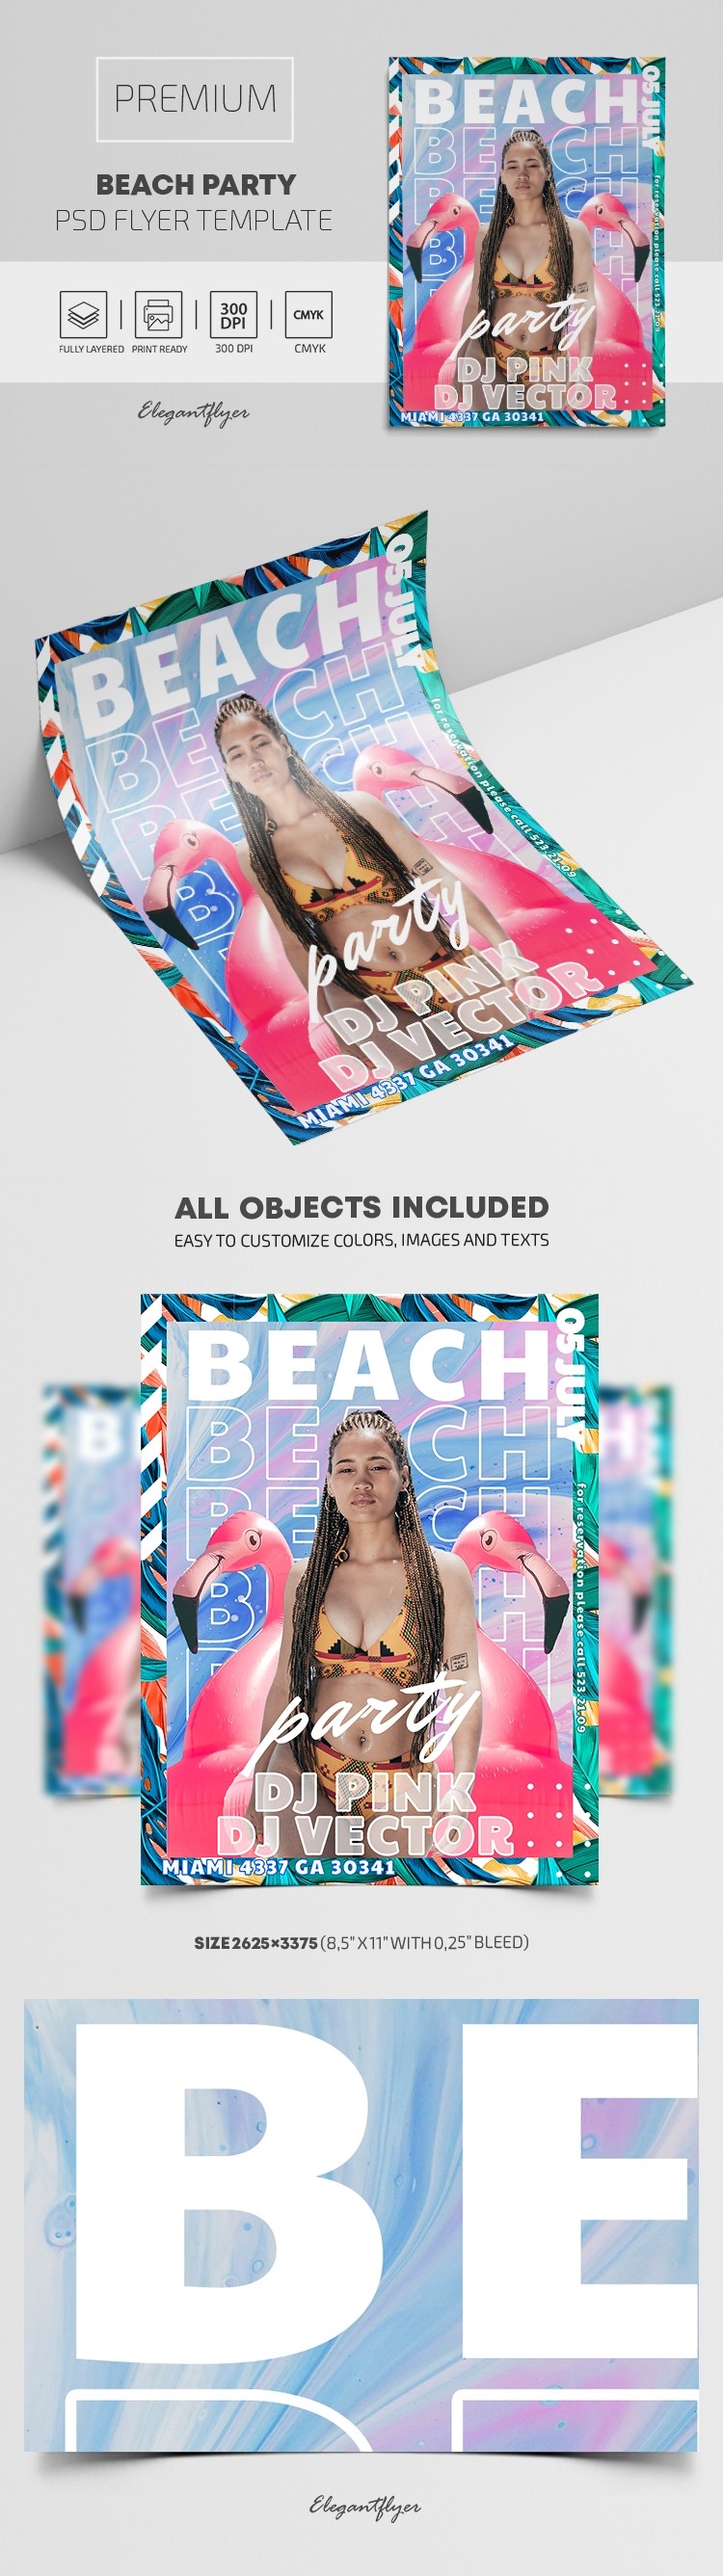 Beach Party Flyer by ElegantFlyer